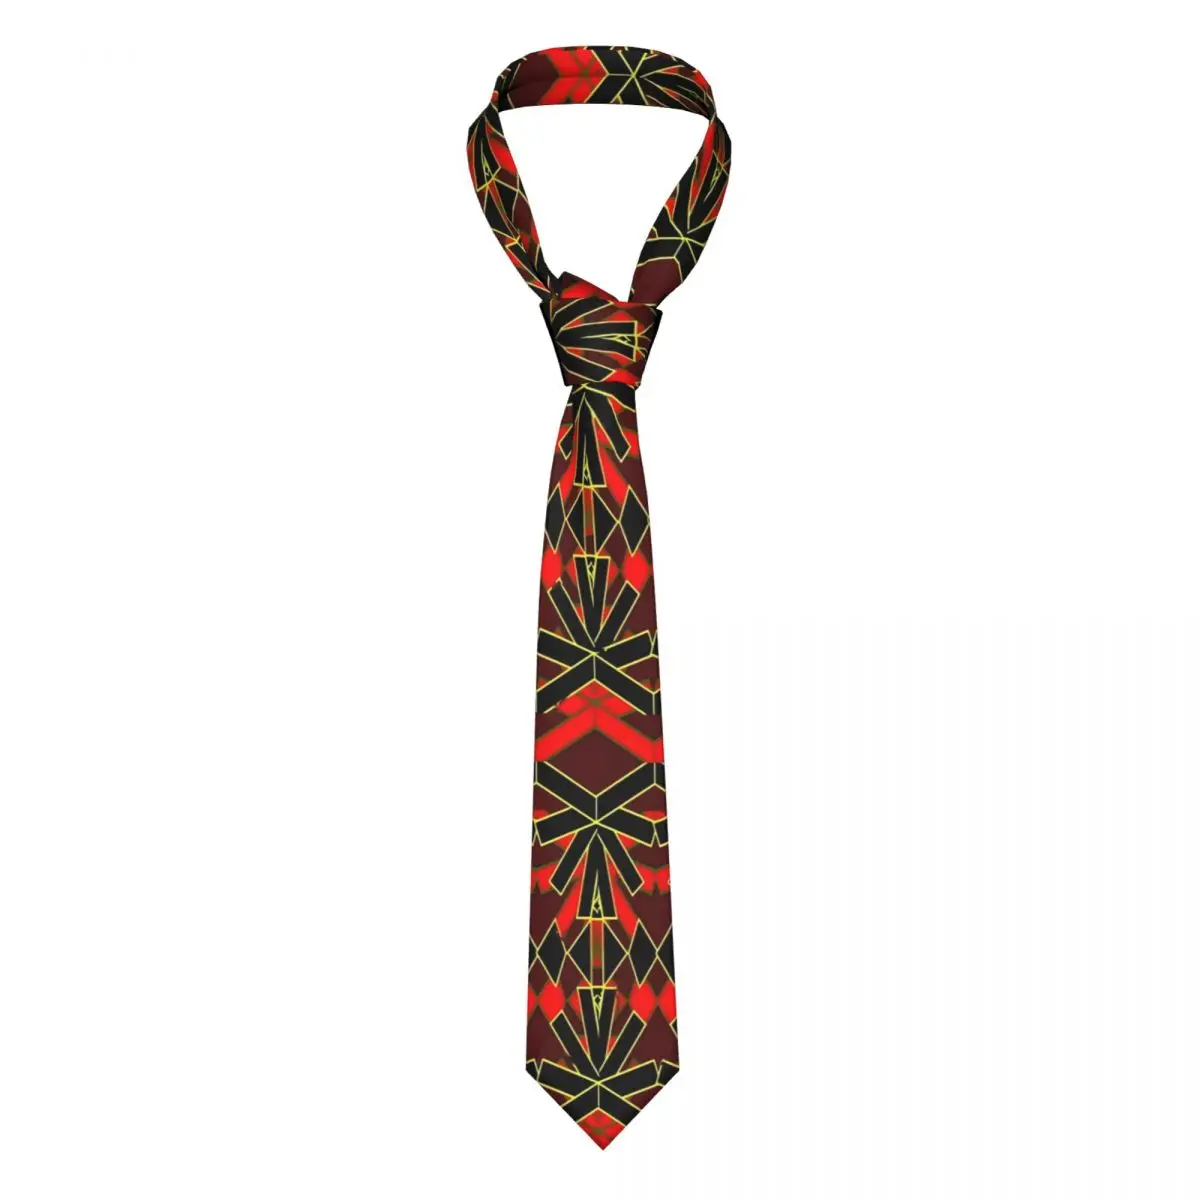 

Винтажный галстук Дашики красная черная рубашка галстук с принтом шеи формальный галстук из полиэстера шелка подарок мужской галстук